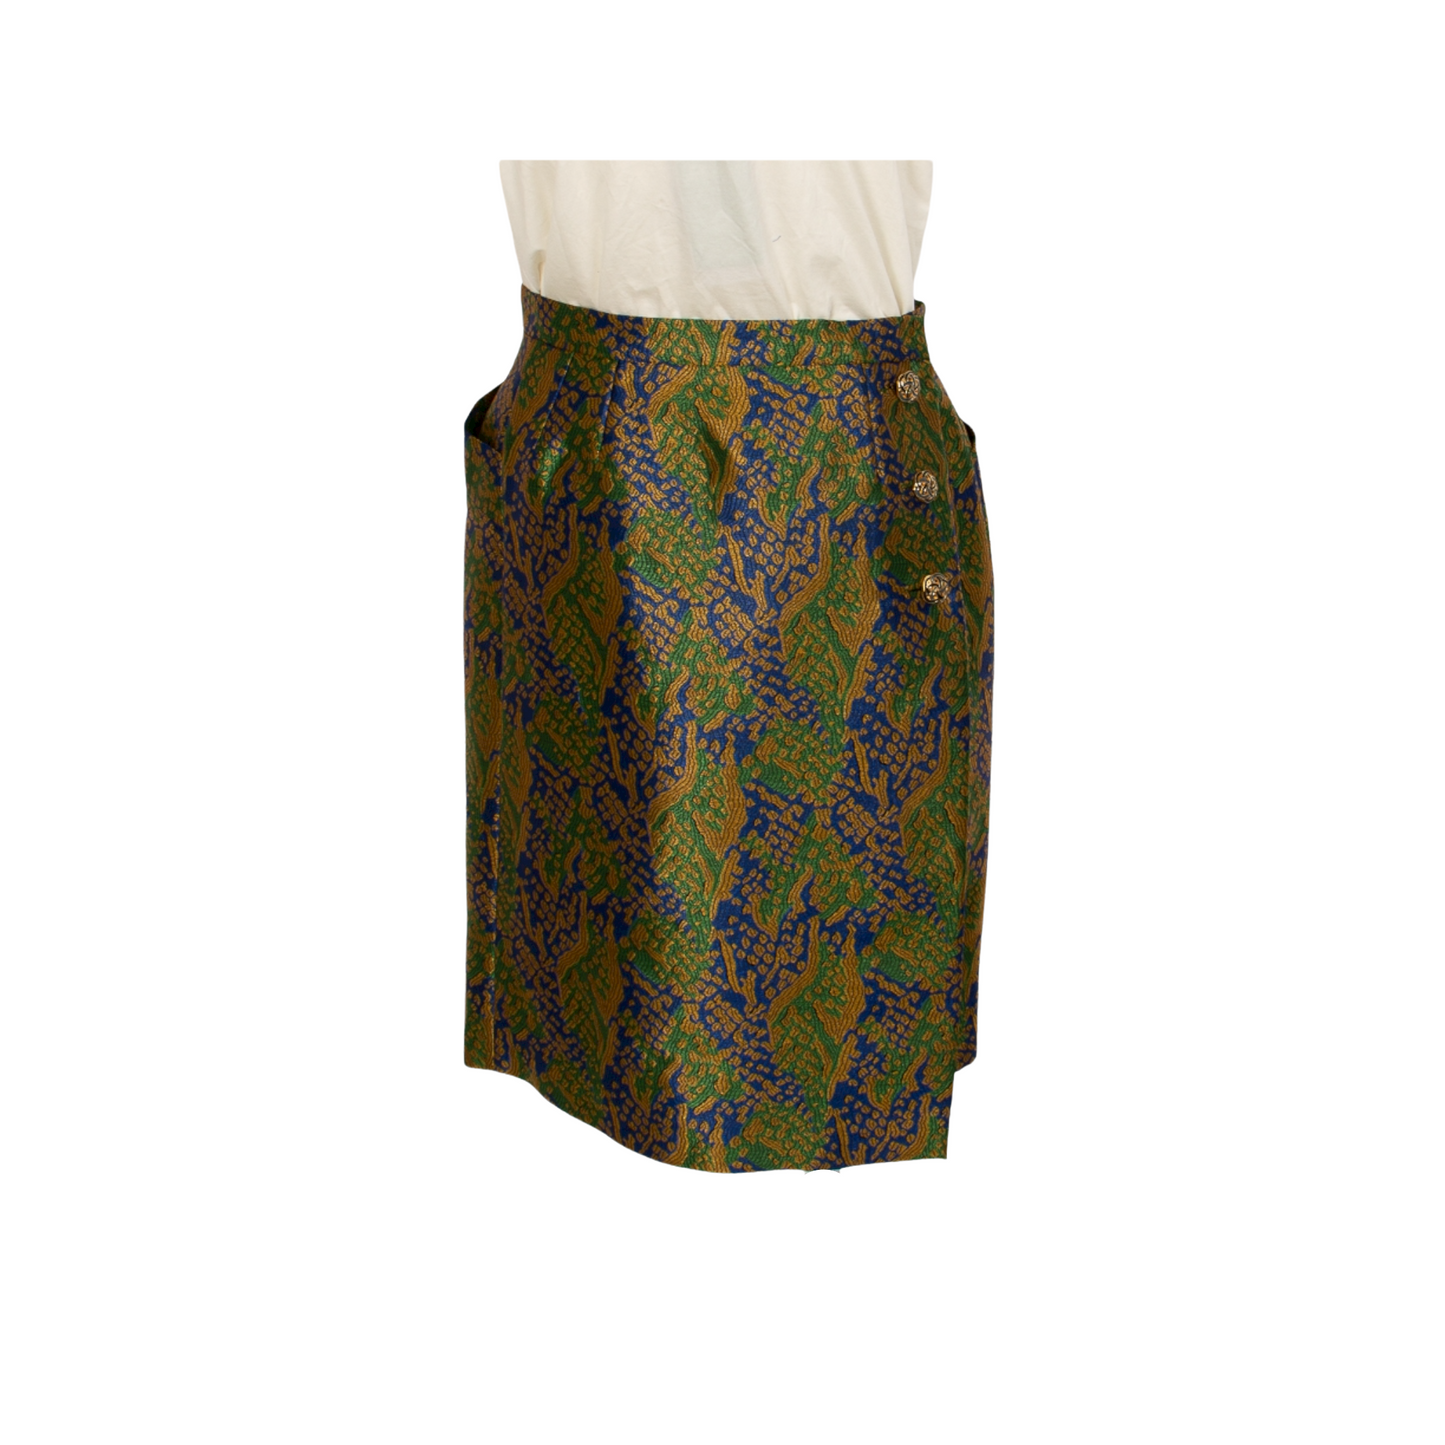 SAINT LAURENT Skirts vintage Lysis Paris pre-owned secondhand